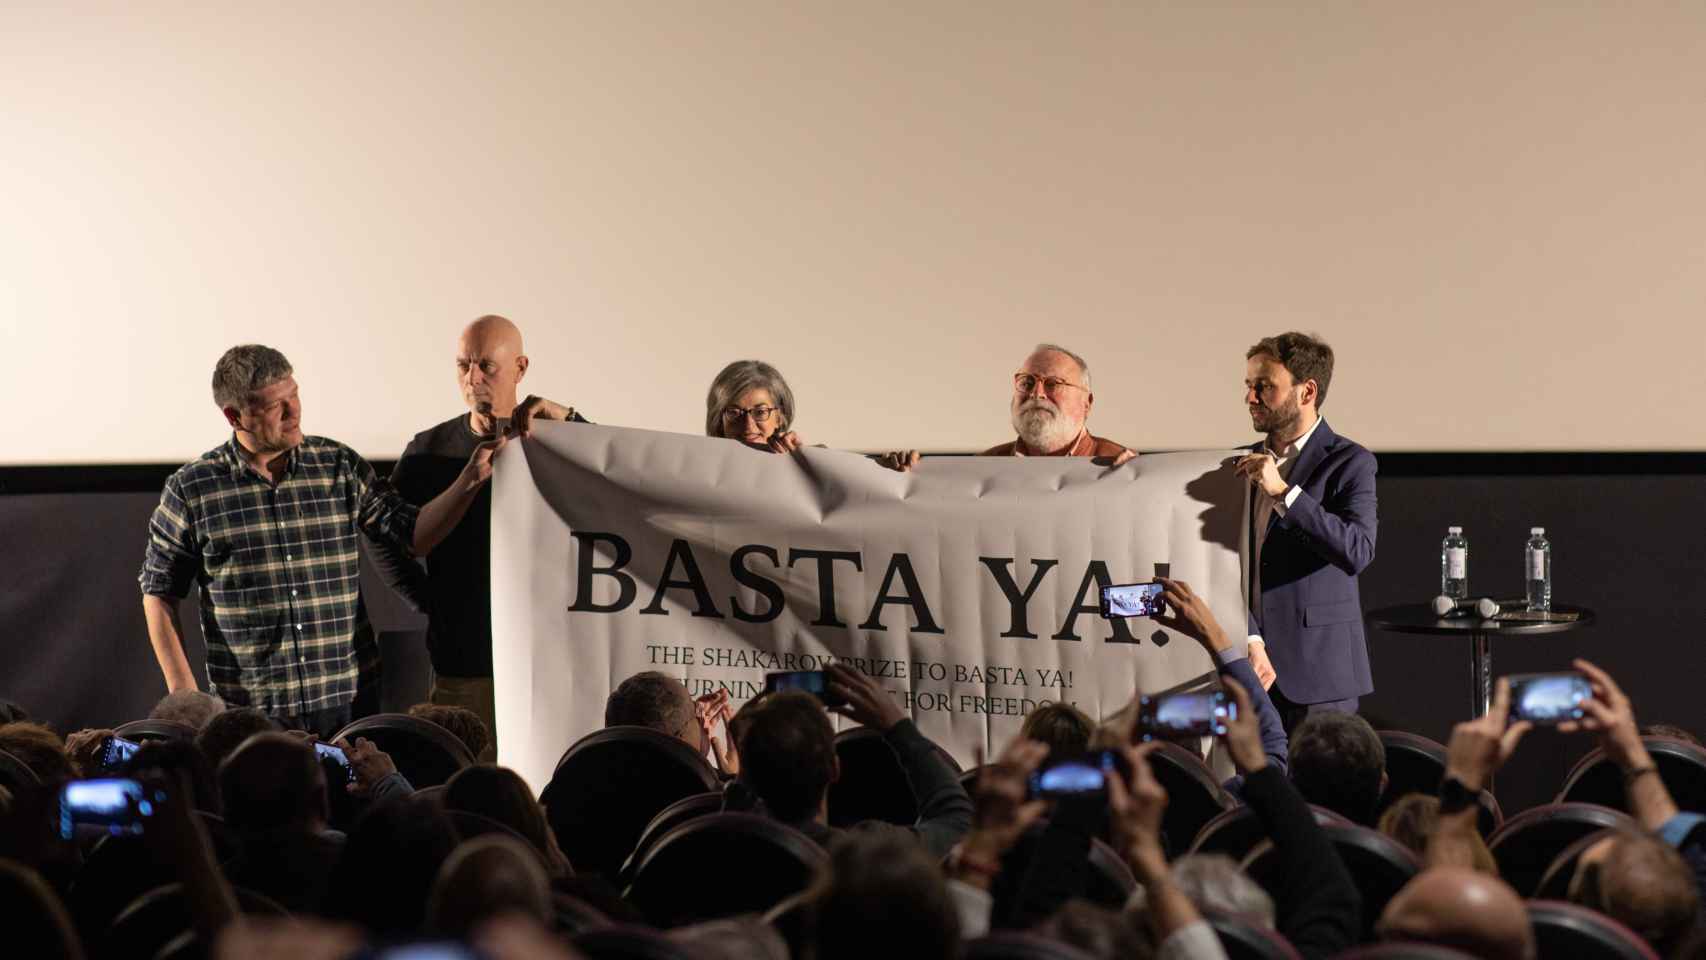 Fernando Savater y Maite Pagaza posan junto a los realizadores del documental tras una pancarta de Basta ya.